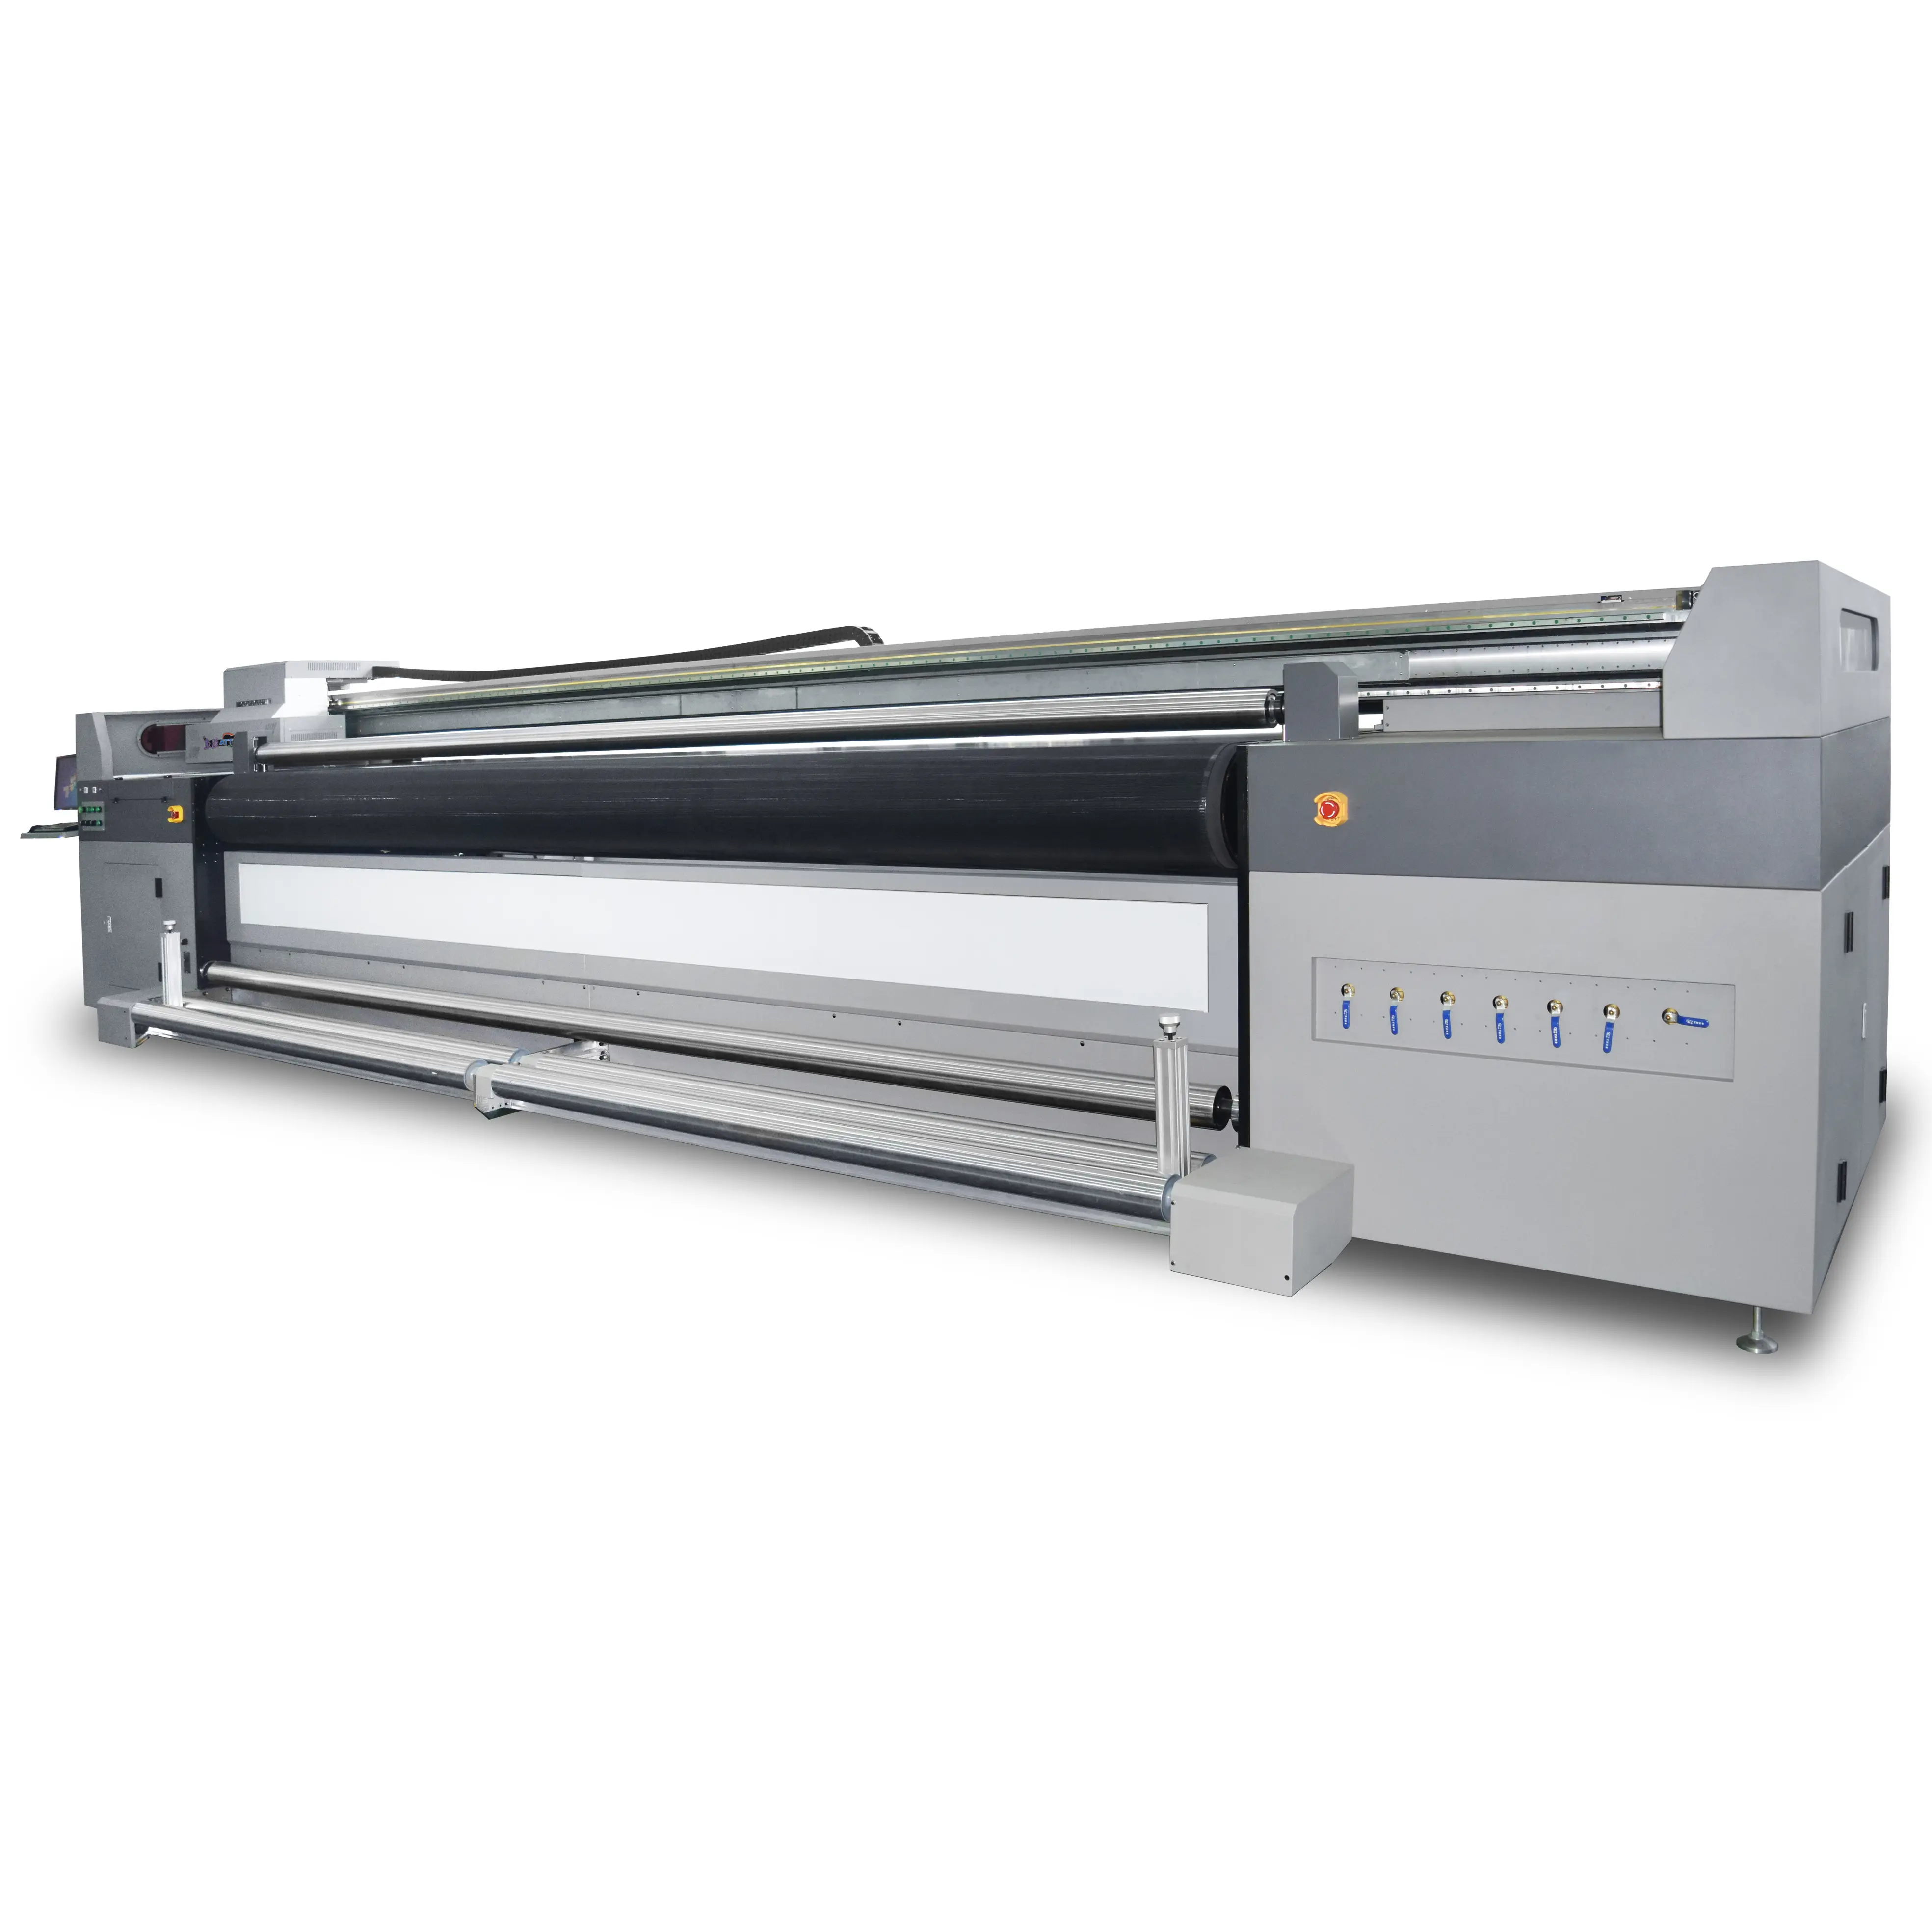 Neueste Yotta-Drucker Rolle zu Rolle Drucker mit 5000 mm kompatibel mit Kyocera-druckköpfen für Tintenstrahl-UV-Drucker